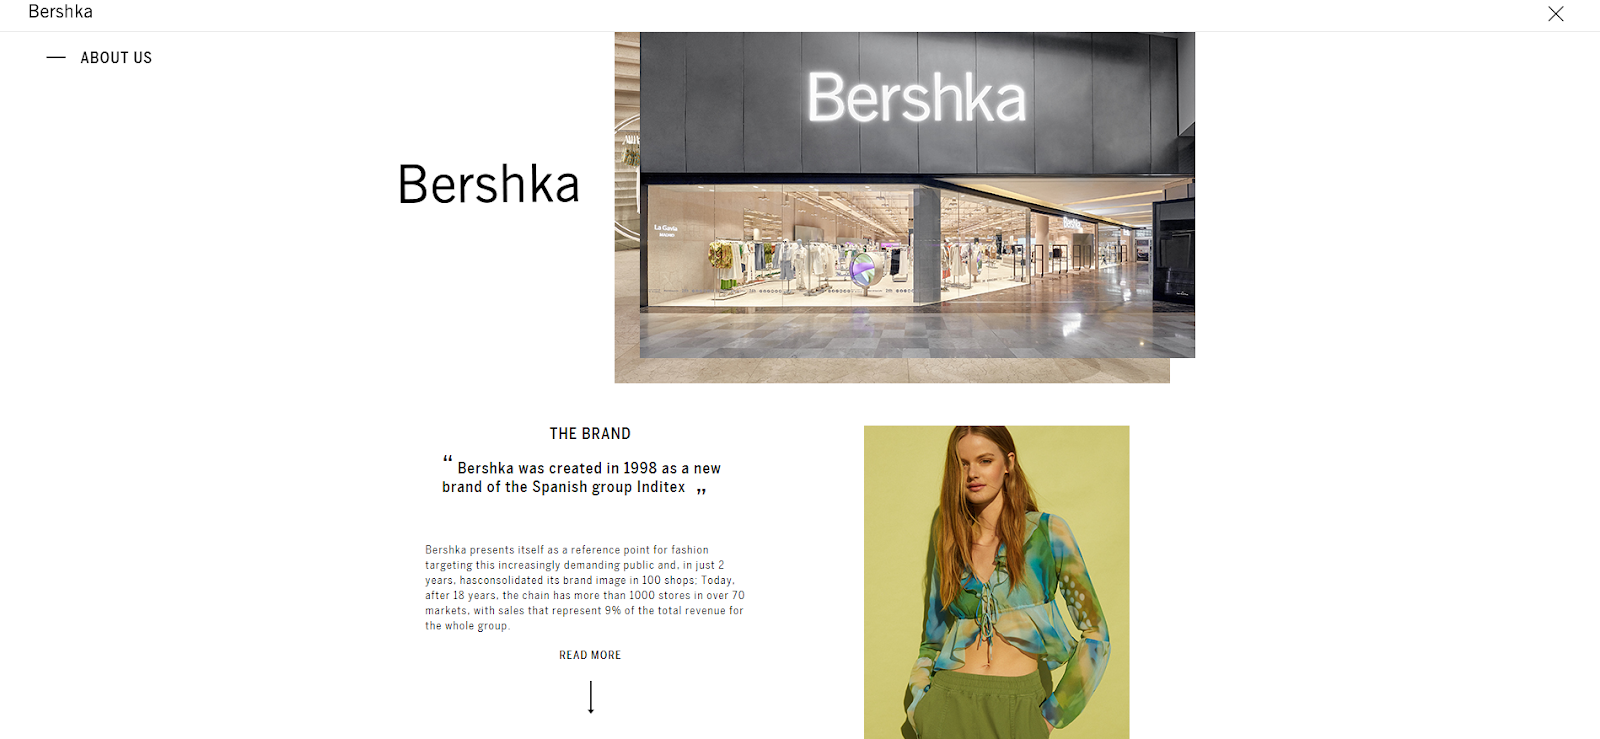 Bershka Worldwide | Bershka